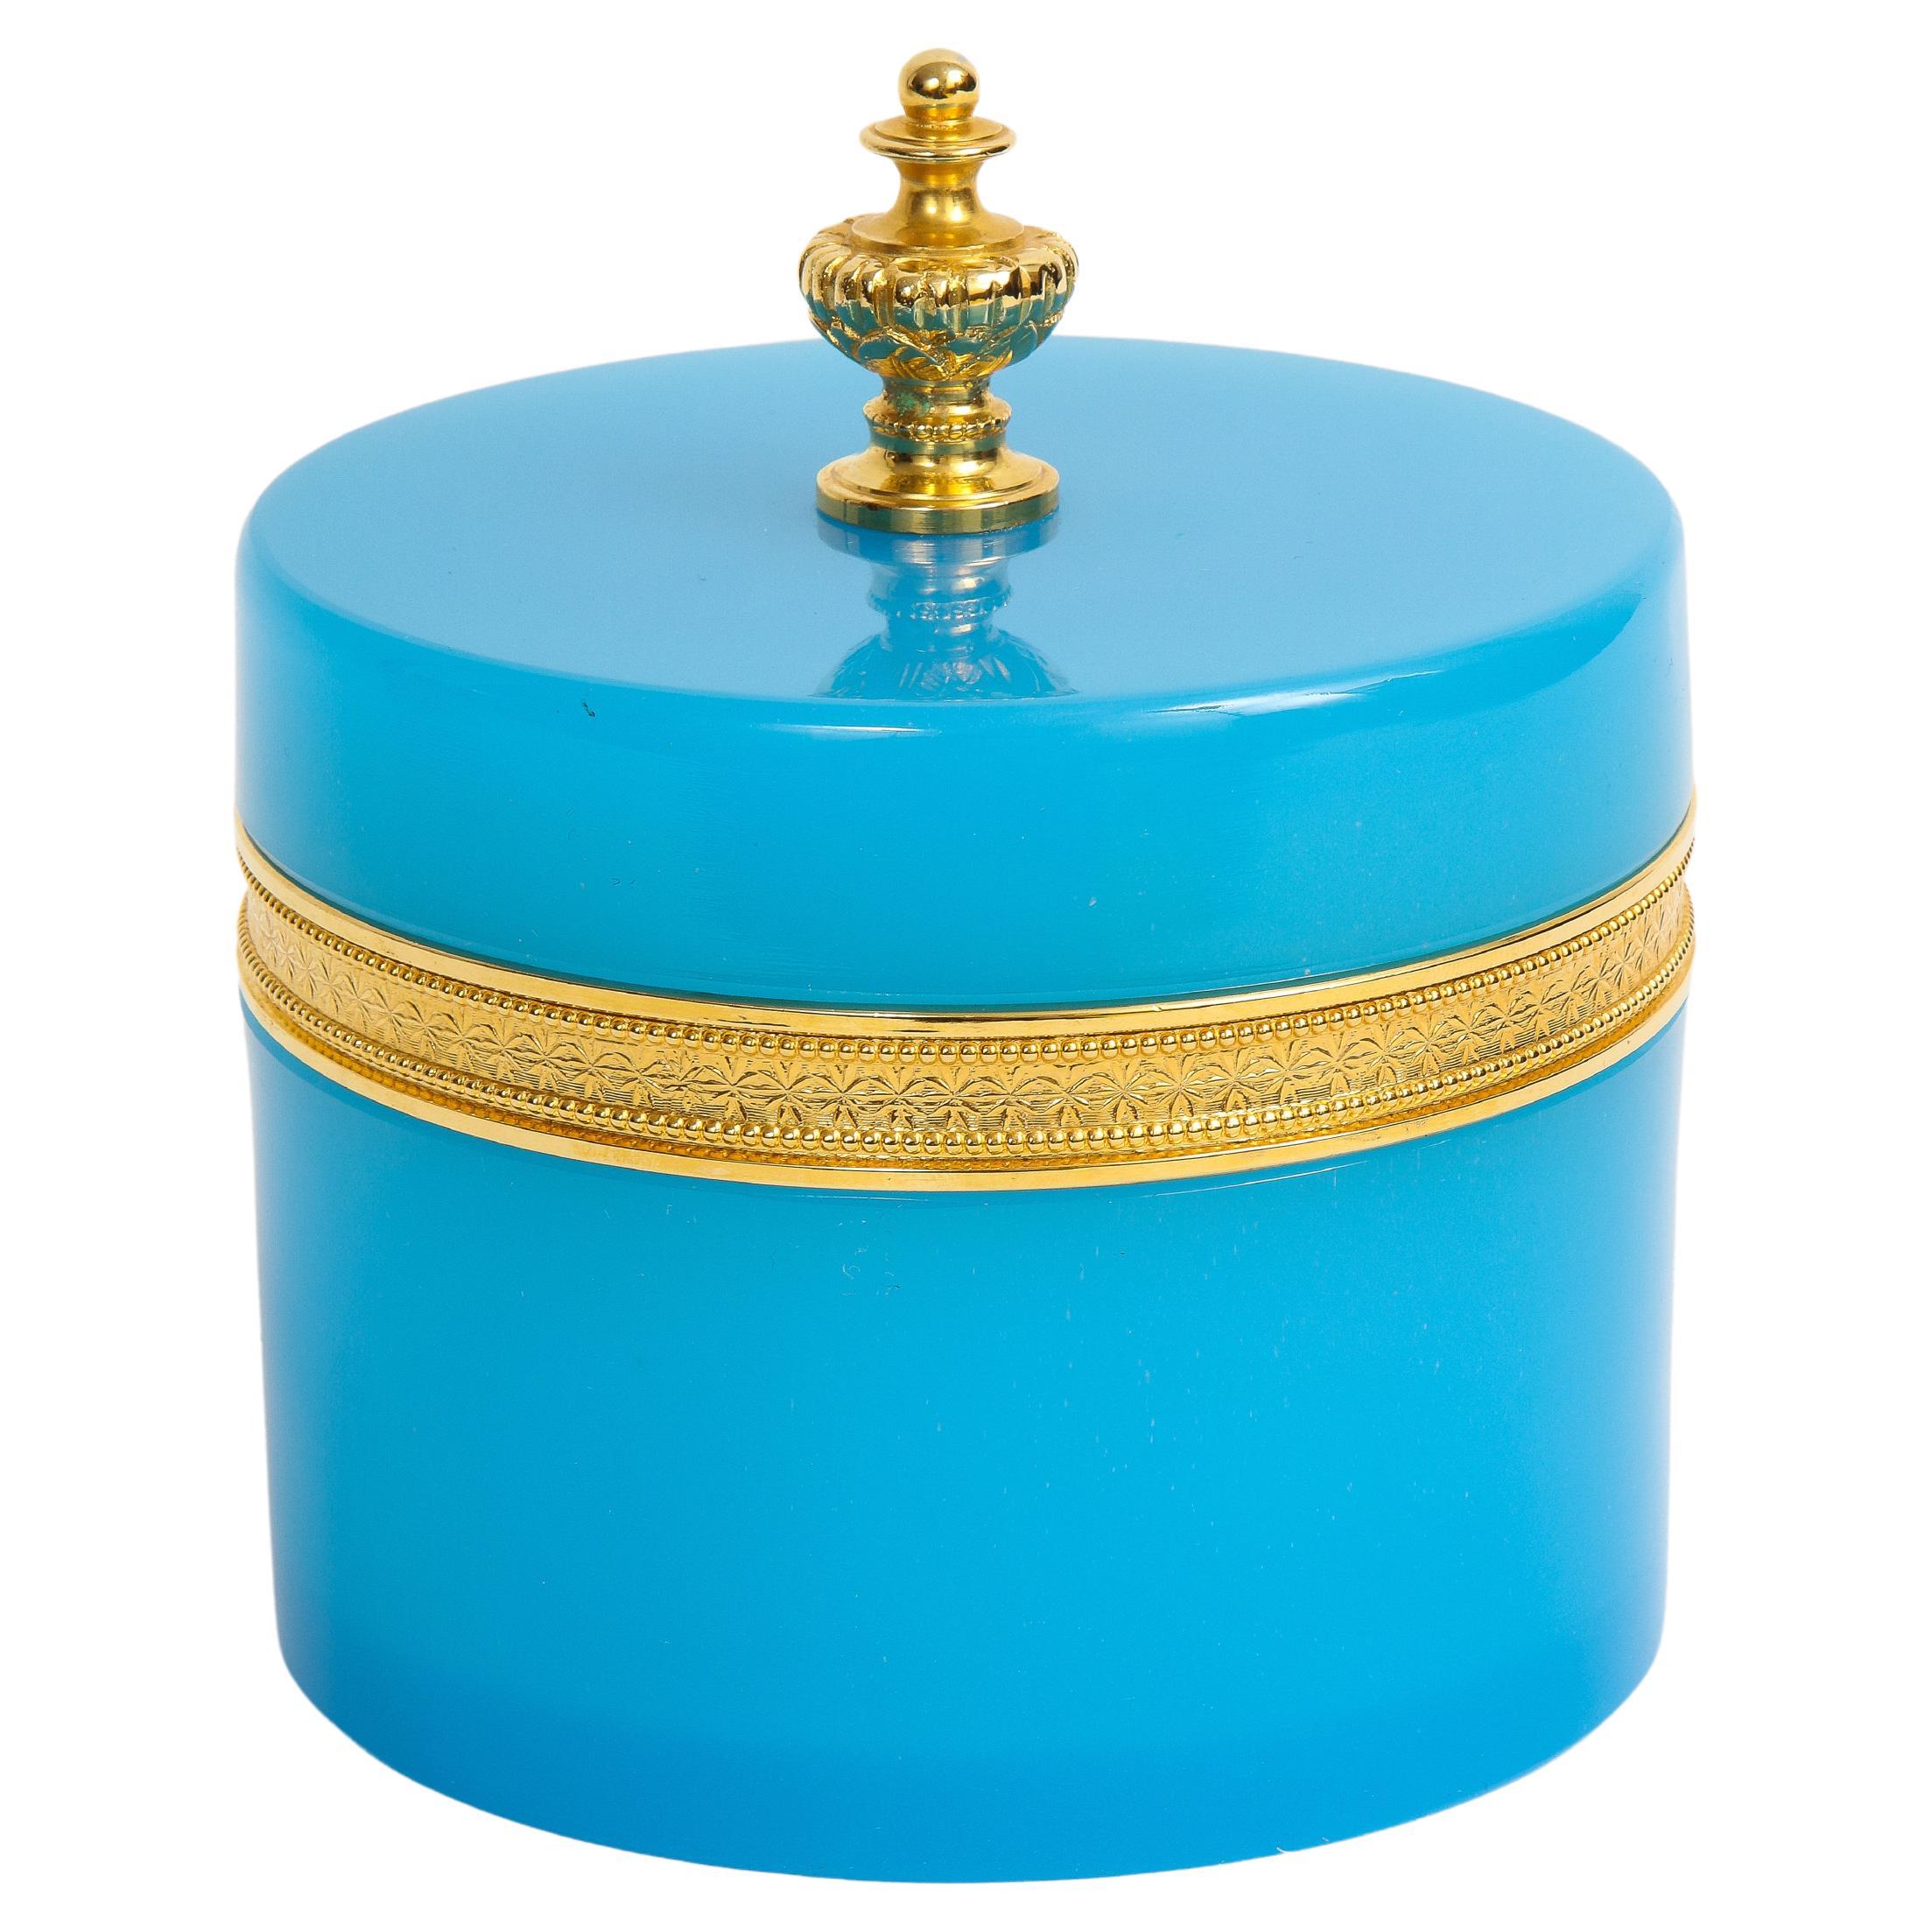 Boîte couverte en bronze doré montée en opalescence bleue et fleuron en bronze doré